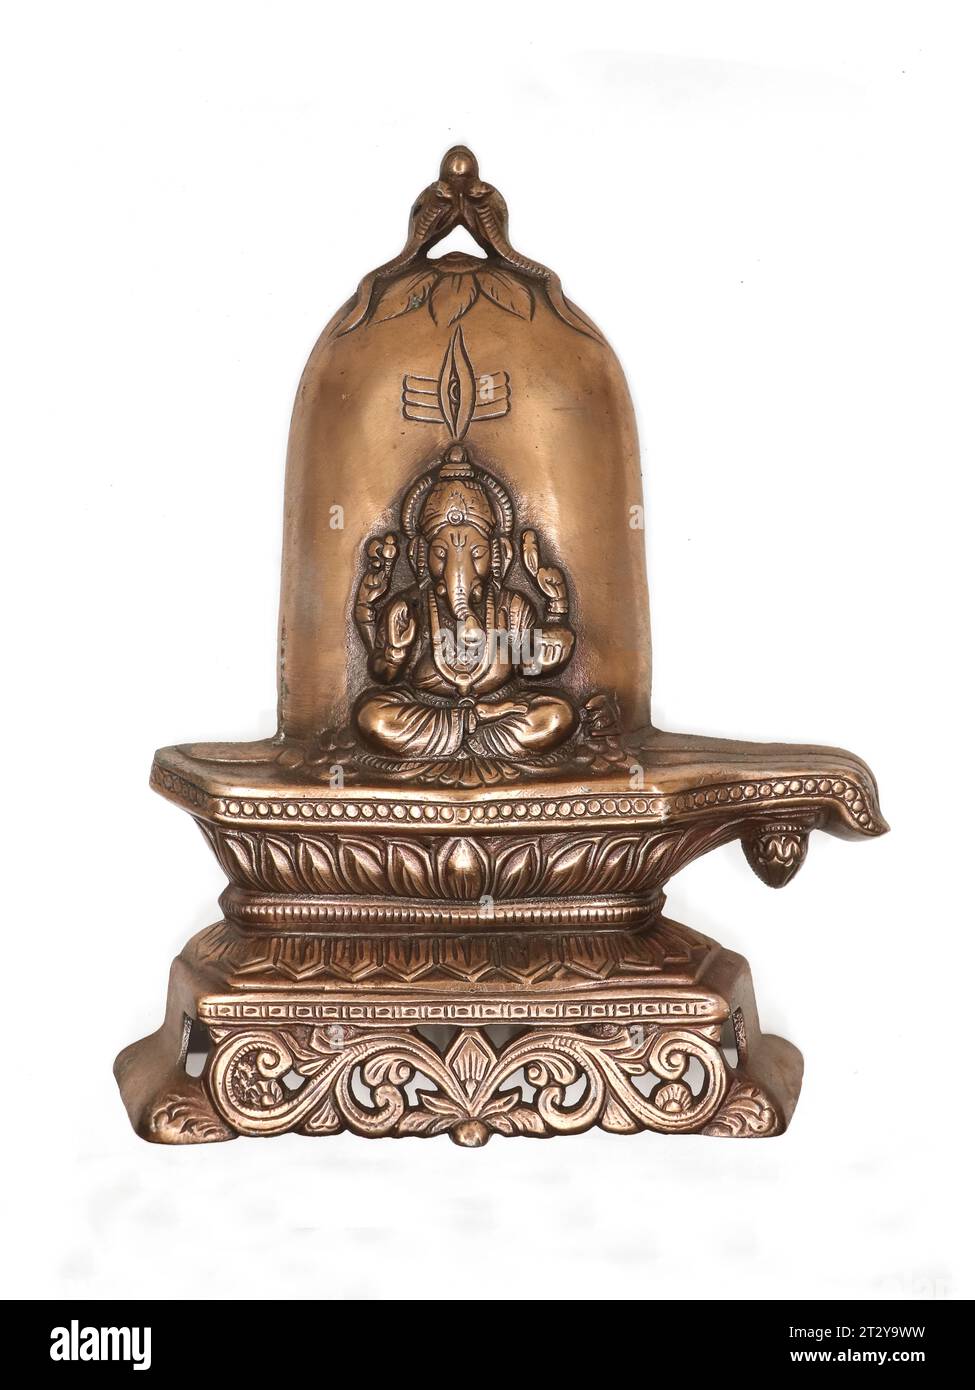 Eine Bronze-Kupfer-Statue des Herrn ganesh, der auf einem heiligen shiva-Linga-Stein sitzt, verziert mit Mustern und Schnitzereien auf weißem Hintergrund Stockfoto